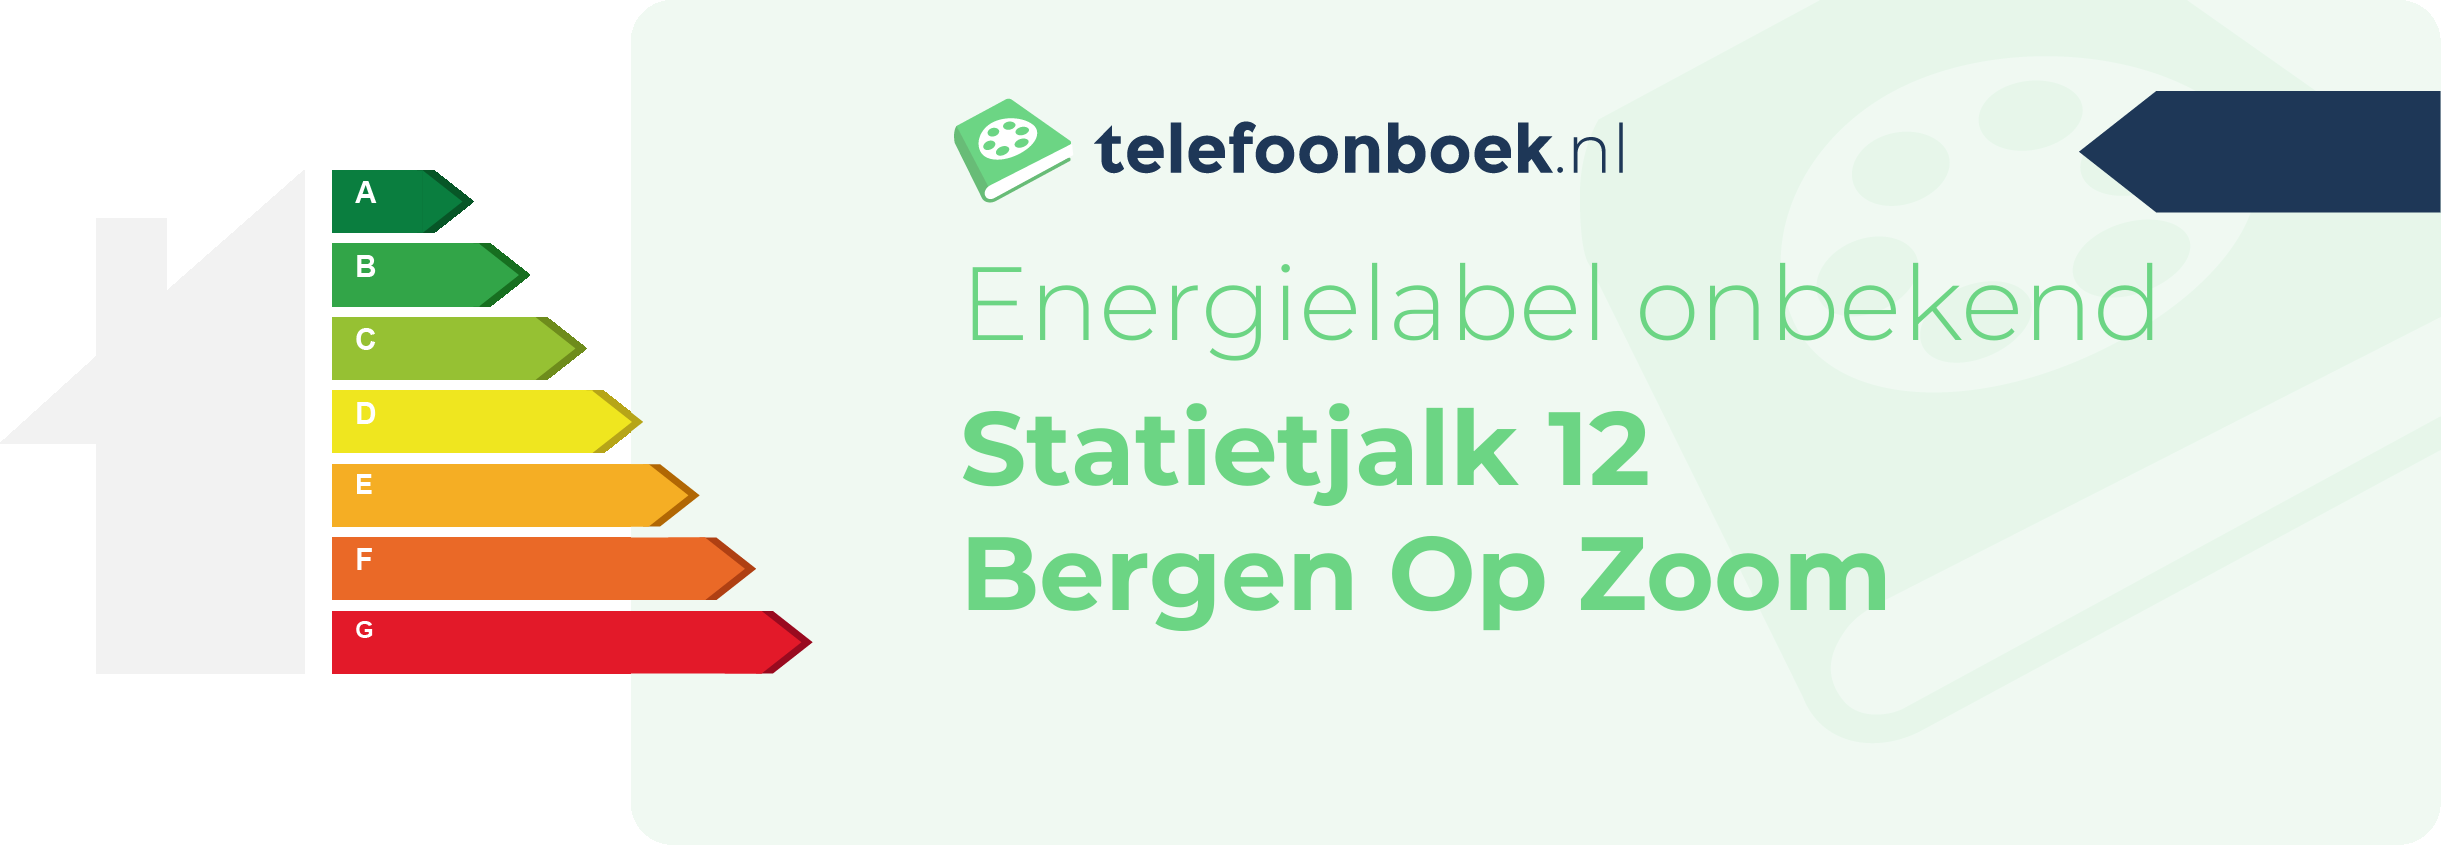 Energielabel Statietjalk 12 Bergen Op Zoom